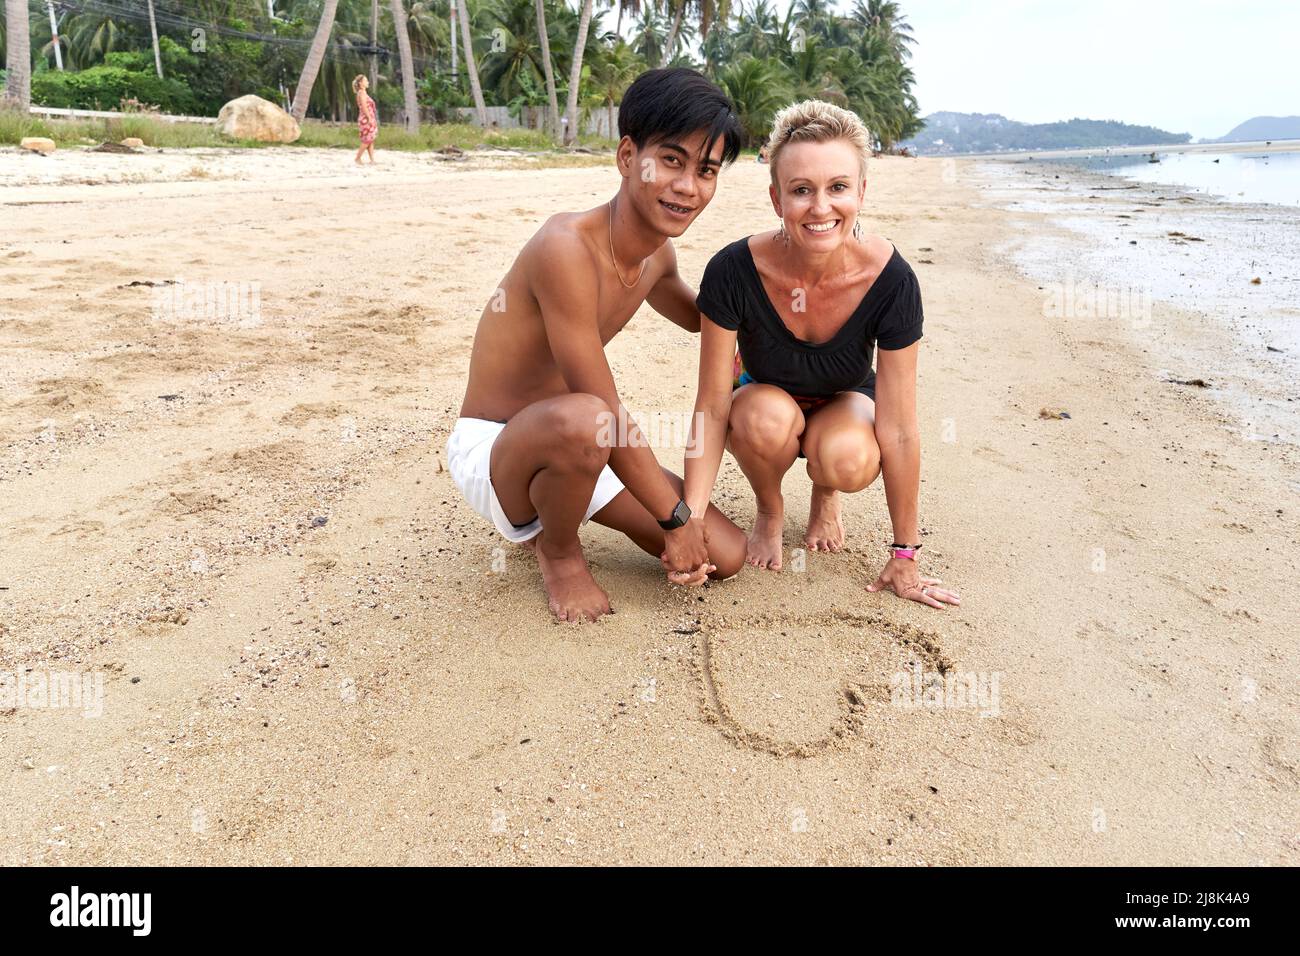 Coppia accovacciata sulla spiaggia mentre disegnano una forma di cuore sulla sabbia Foto Stock